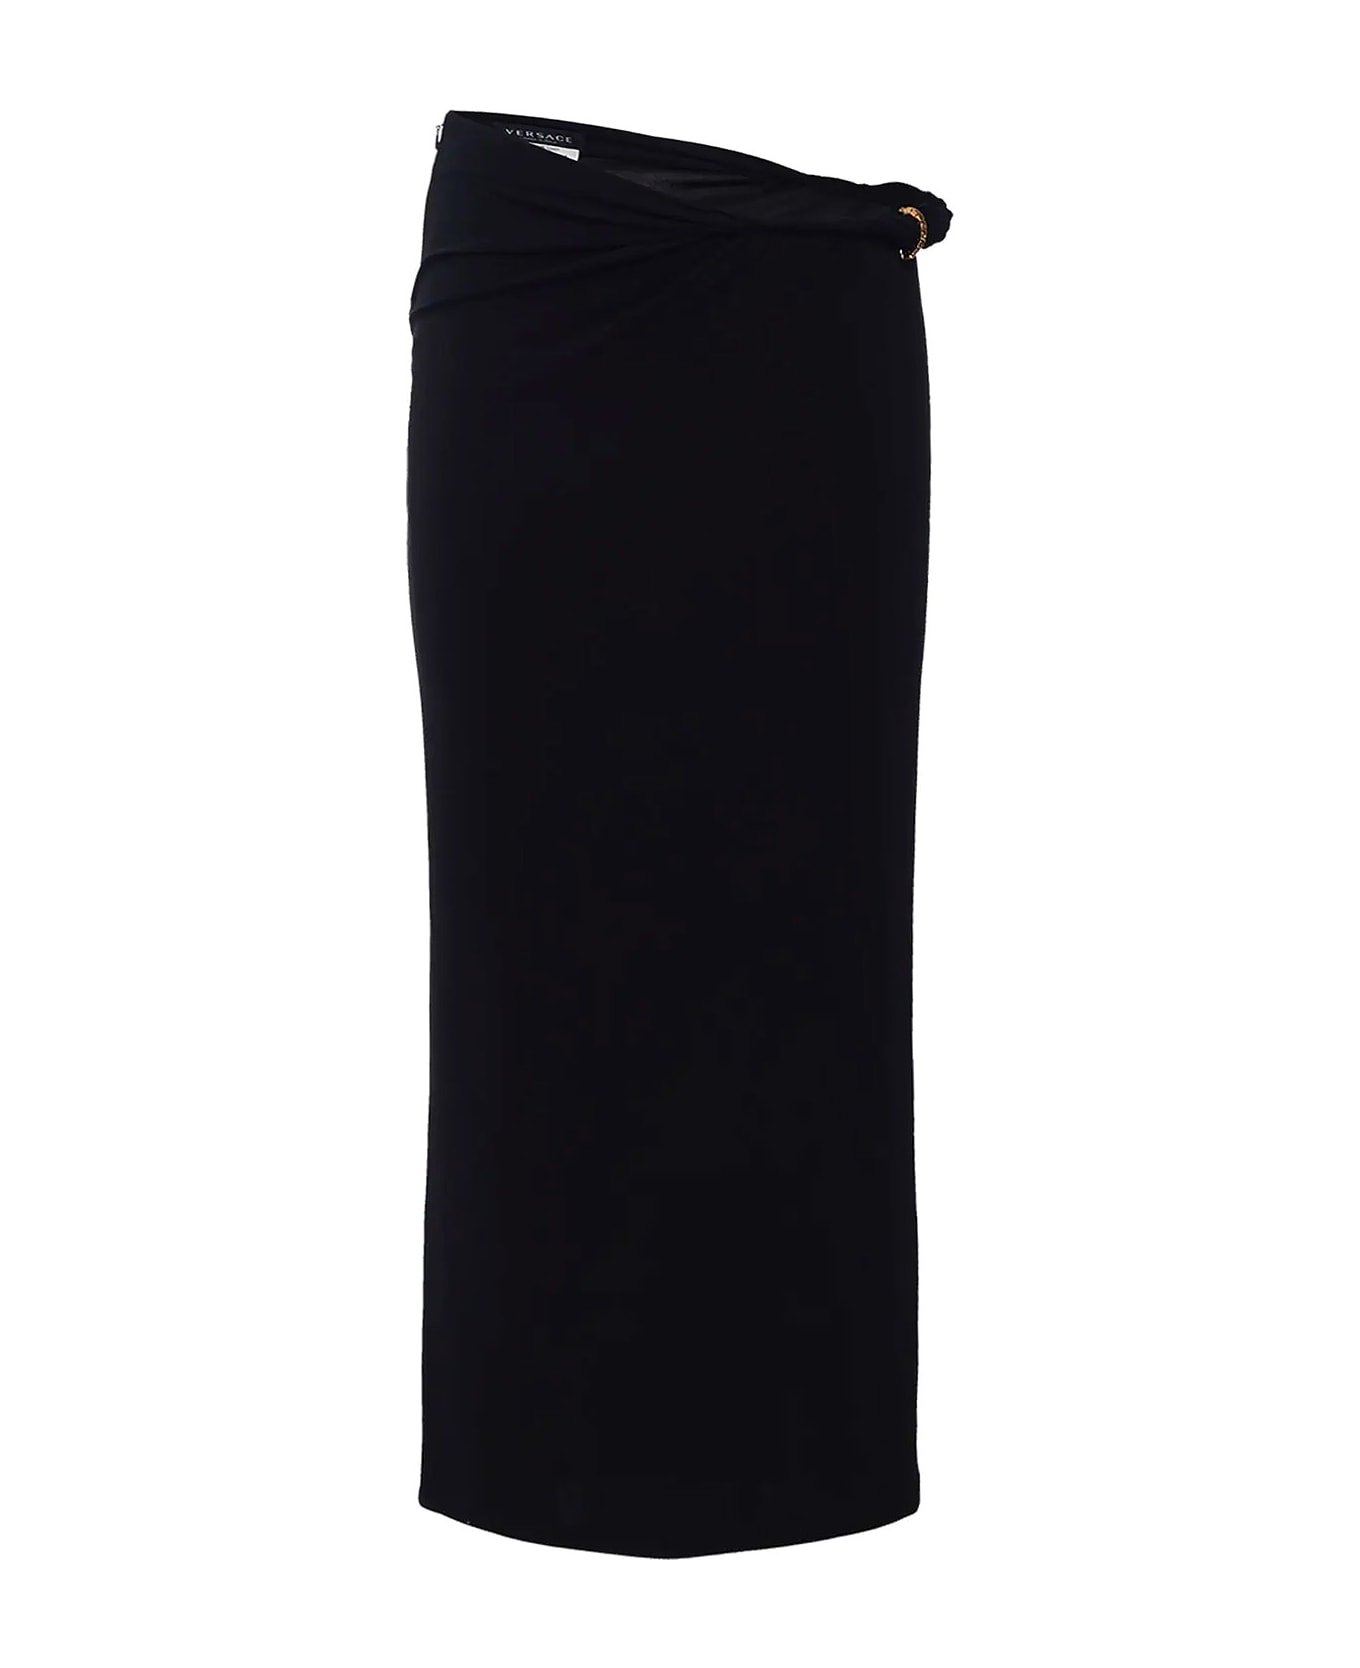 Versace One-zip Draped Skirt - Black スカート